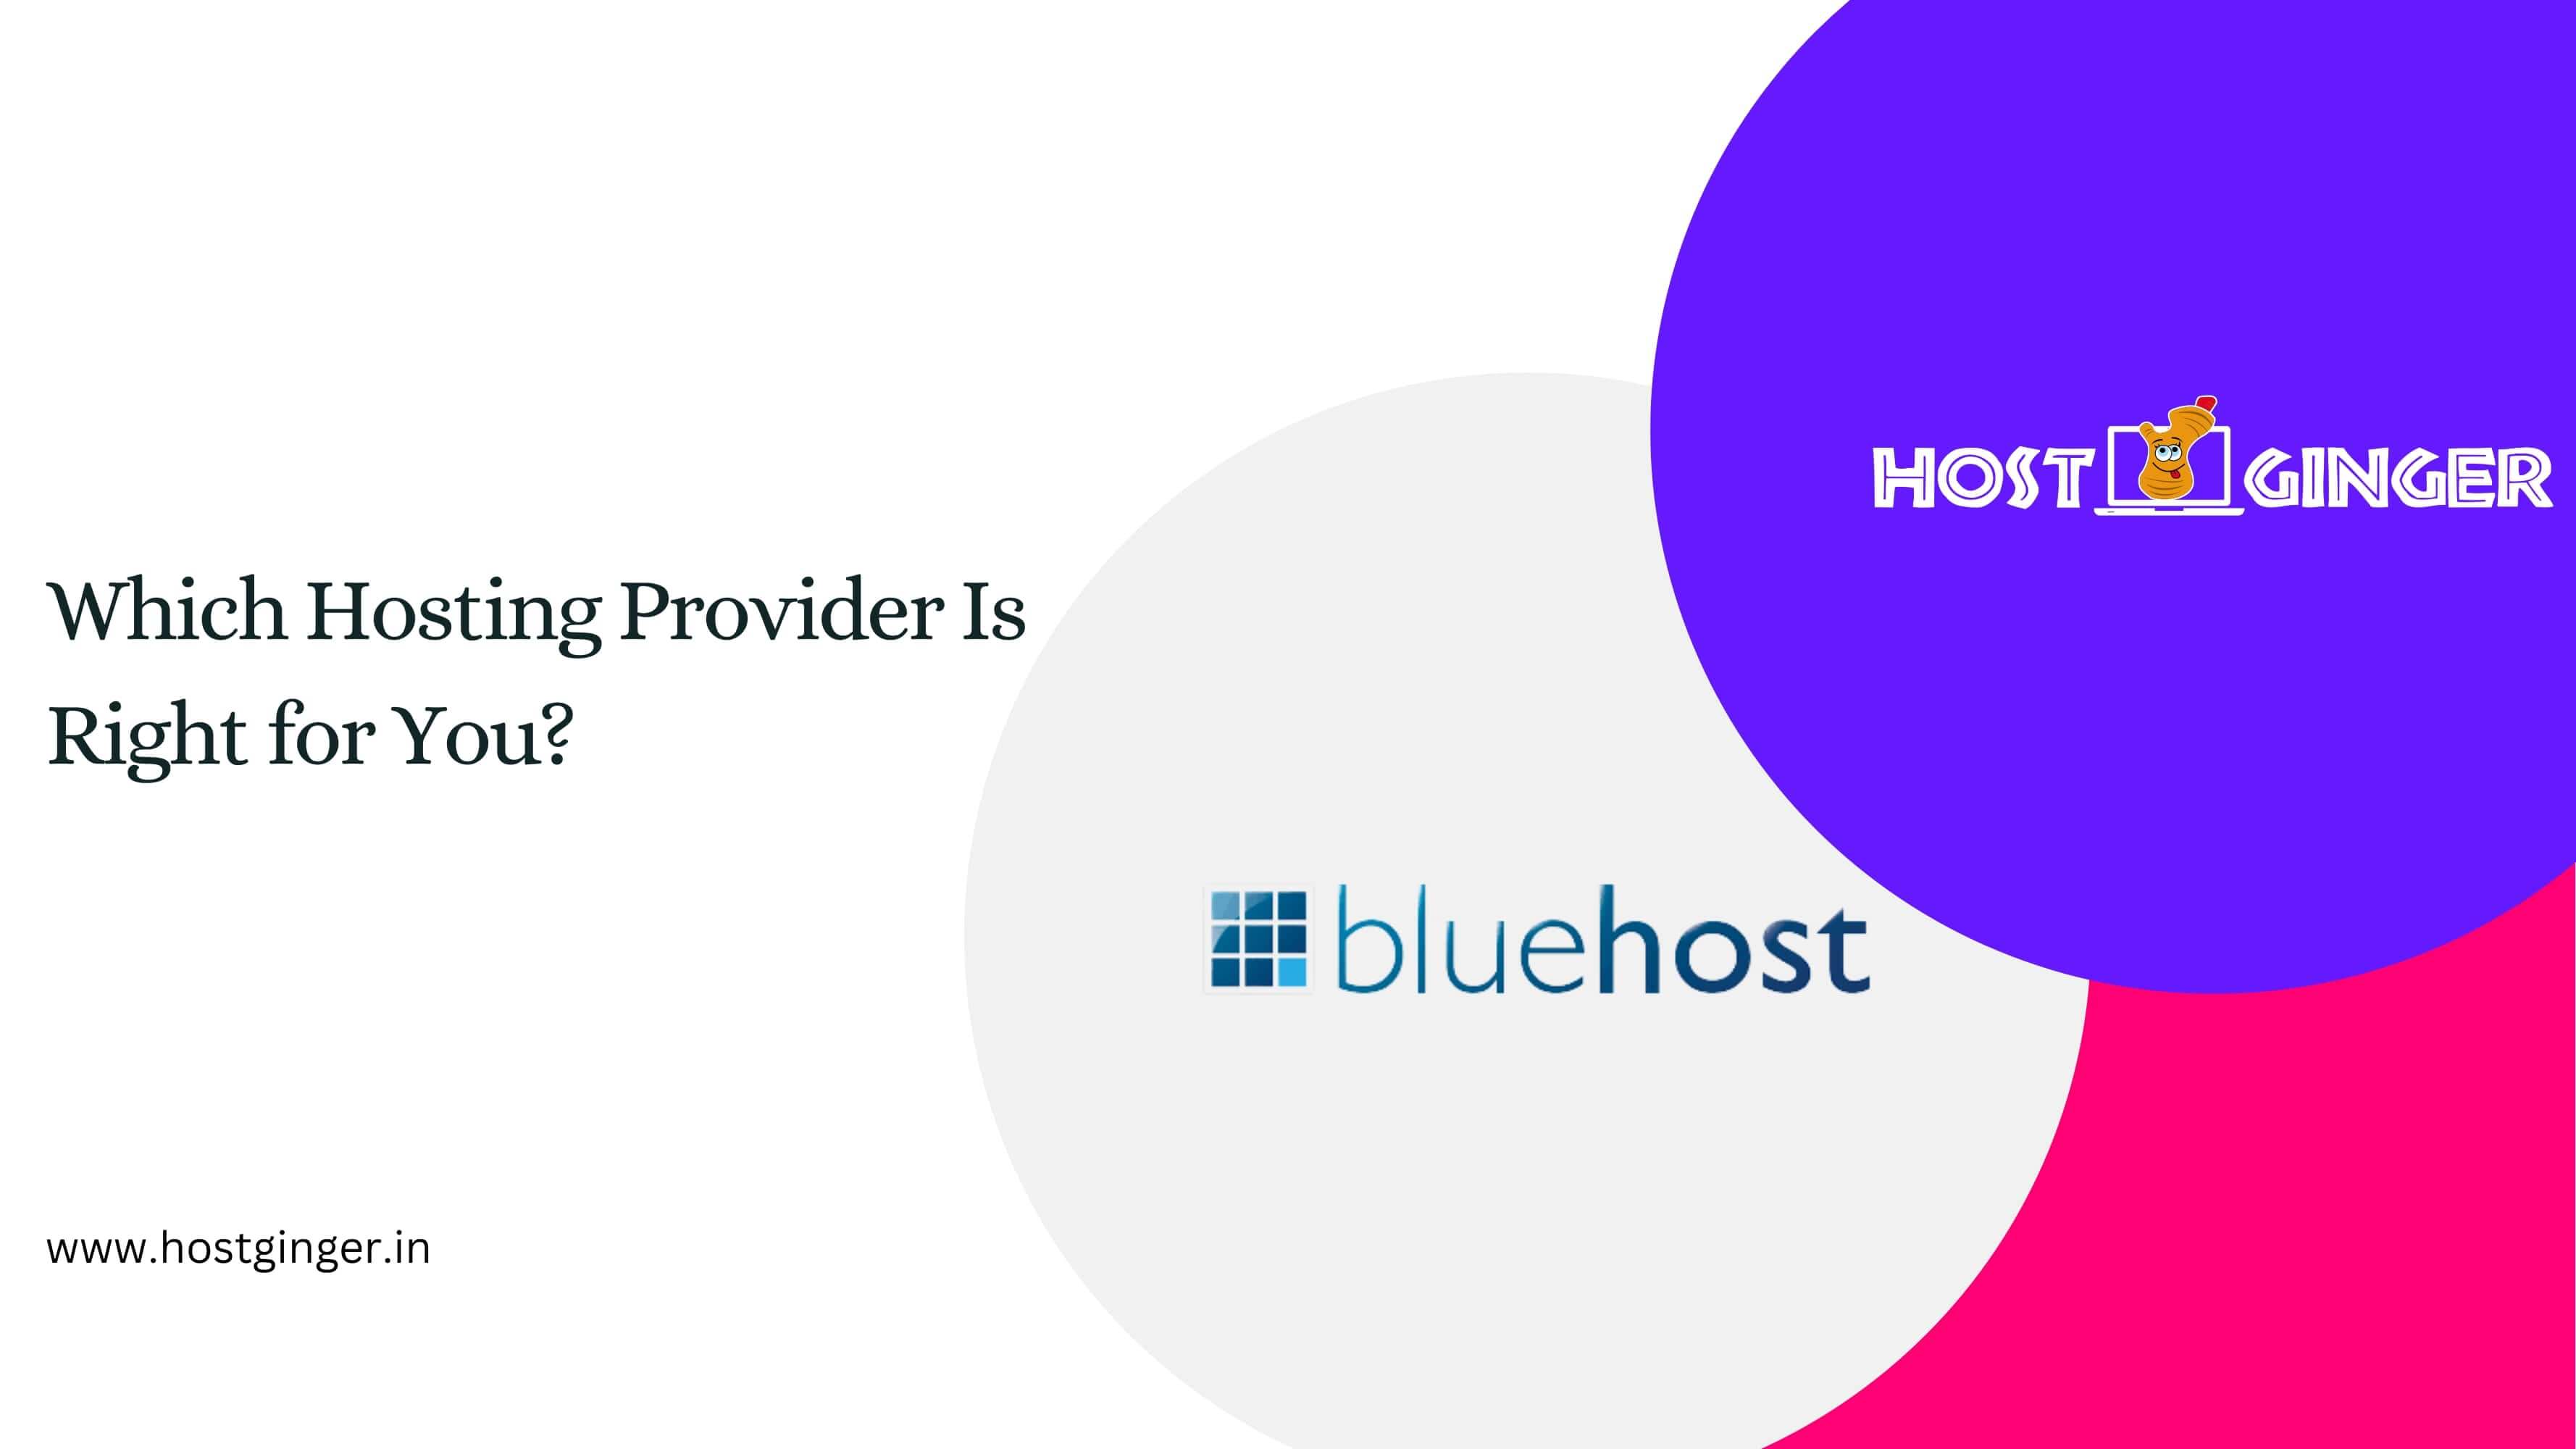 Hostginger vs. BlueHost